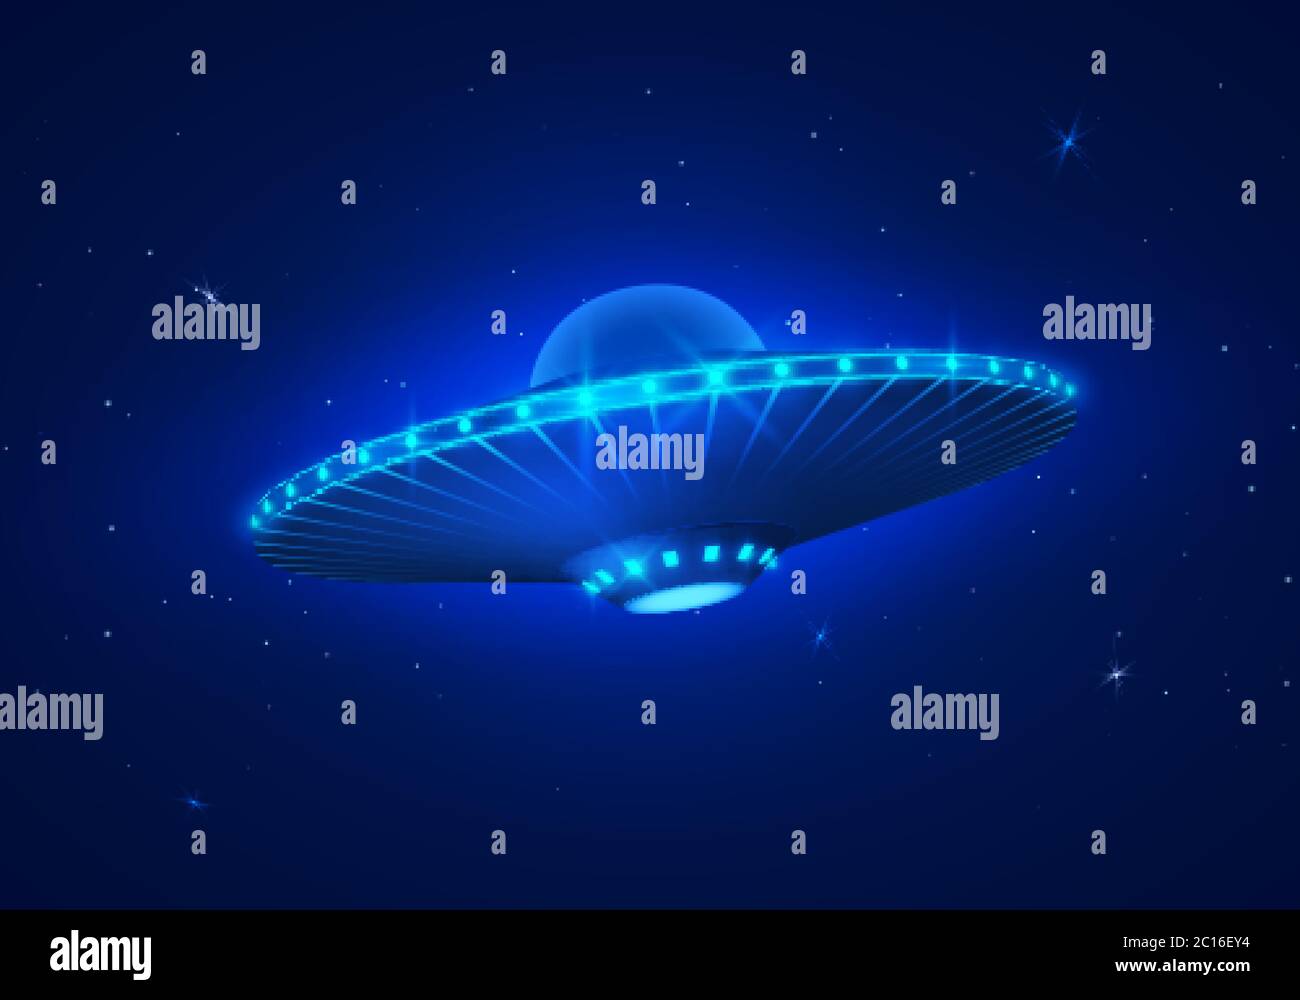 UFO in dark blue night sky. Vector illustration Stock Vector